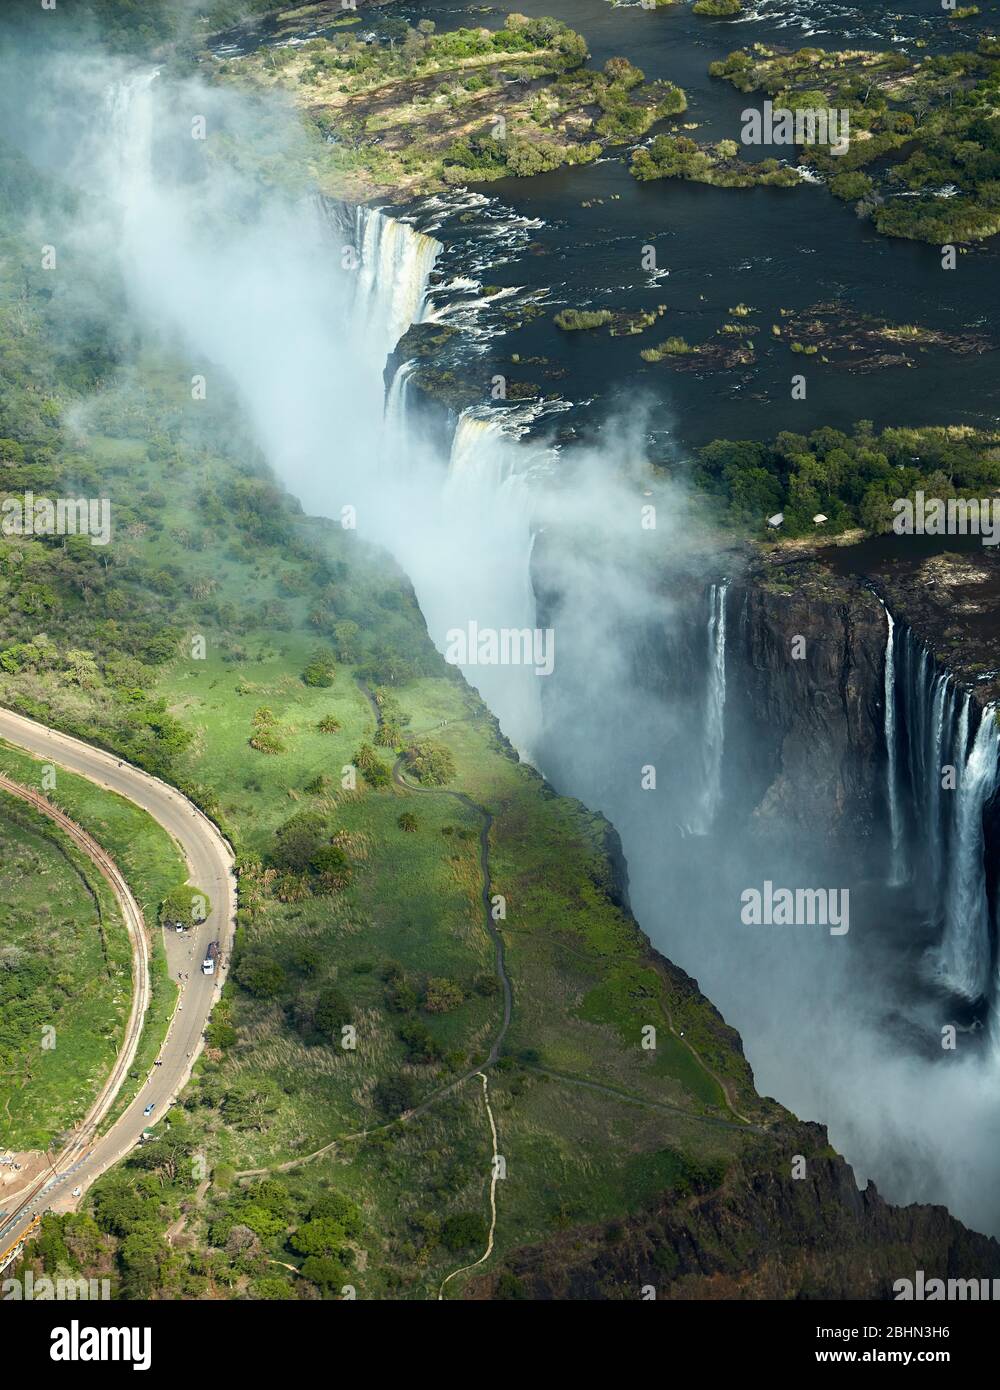 Victoria Falls or 'Mosi-oa-Tunya' (The Smoke that Thunders), and Zambezi River, Zimbabwe / Zambia border, Southern Africa - aerial Stock Photo